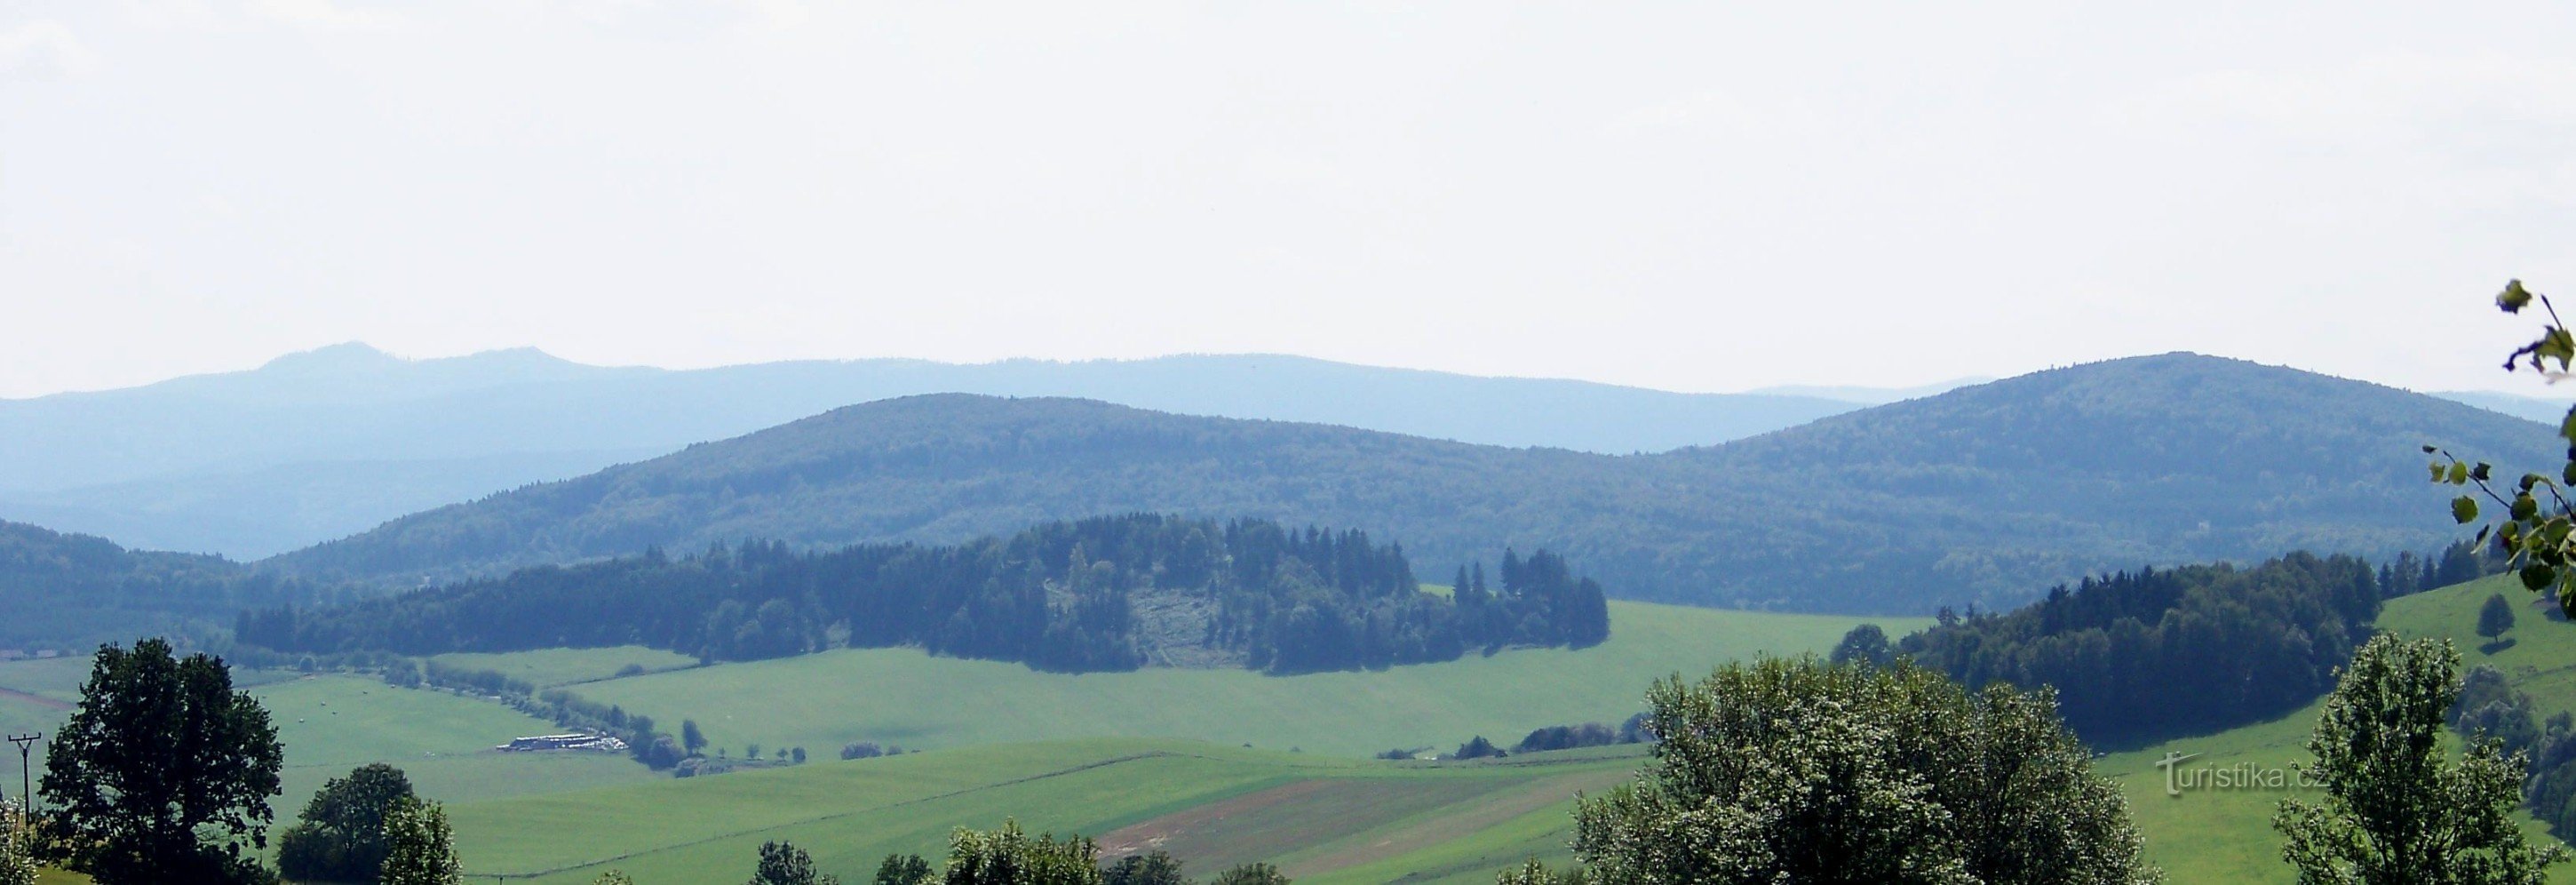 Jezvinec à extrema direita, ao lado de Havranice, ao fundo Ostrý e outras cordilheiras fronteiriças..ní